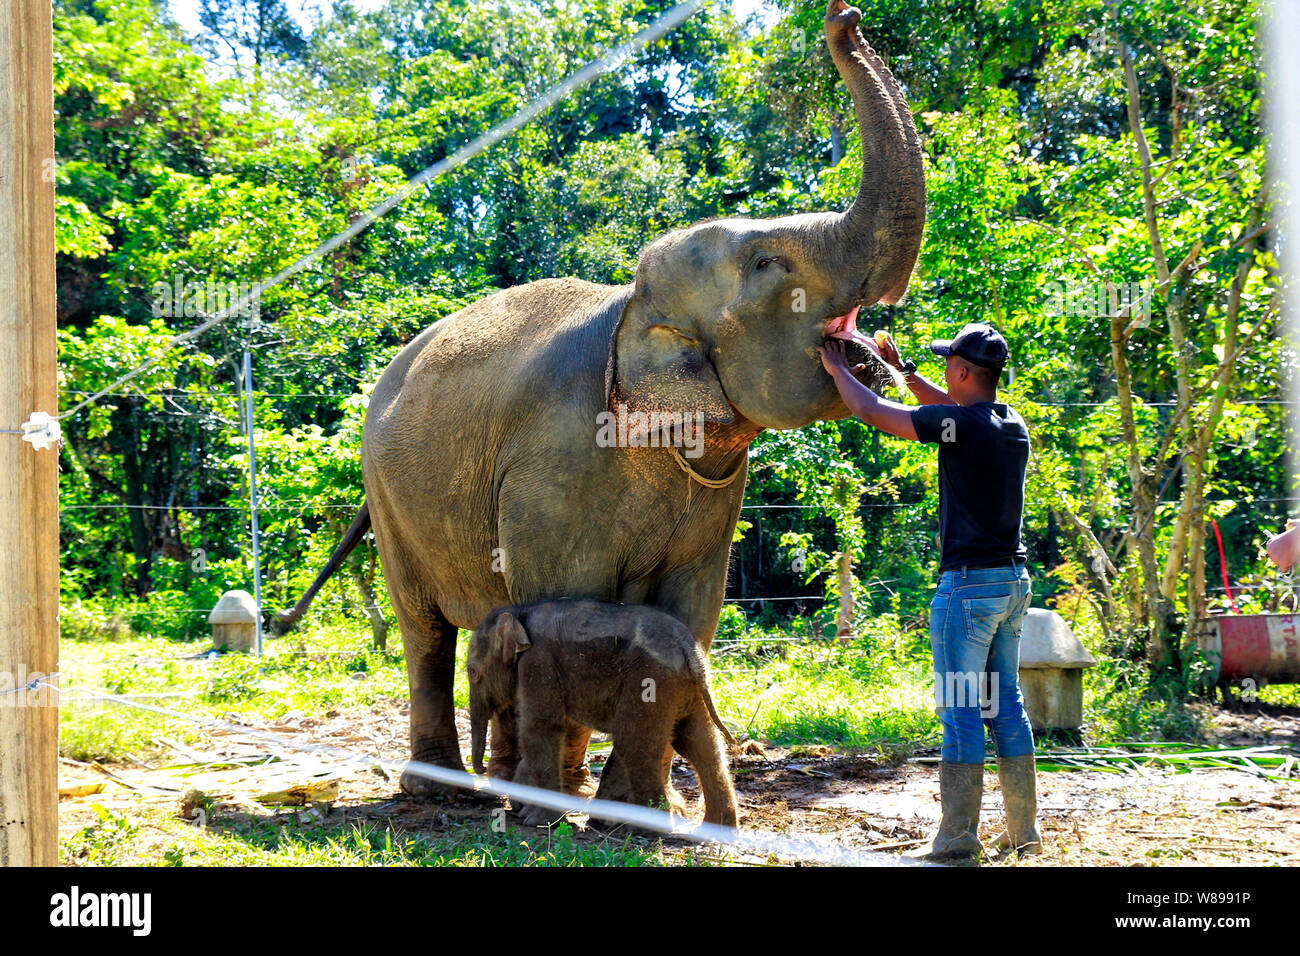 Un Mamot i lavoratori della sanità esamina un elefante di Sumatra all'alore Kuyun conservazione Response Unit (CRU) a Meulaboh, la provincia di Aceh..elefanti di Sumatra sono una specie criticamente minacciata di estinzione, e di fronte a minacce da bracconaggio e deforestazione rampante, ministero dell ambiente stima solo circa 500 rimangono nella provincia di Aceh. Foto Stock